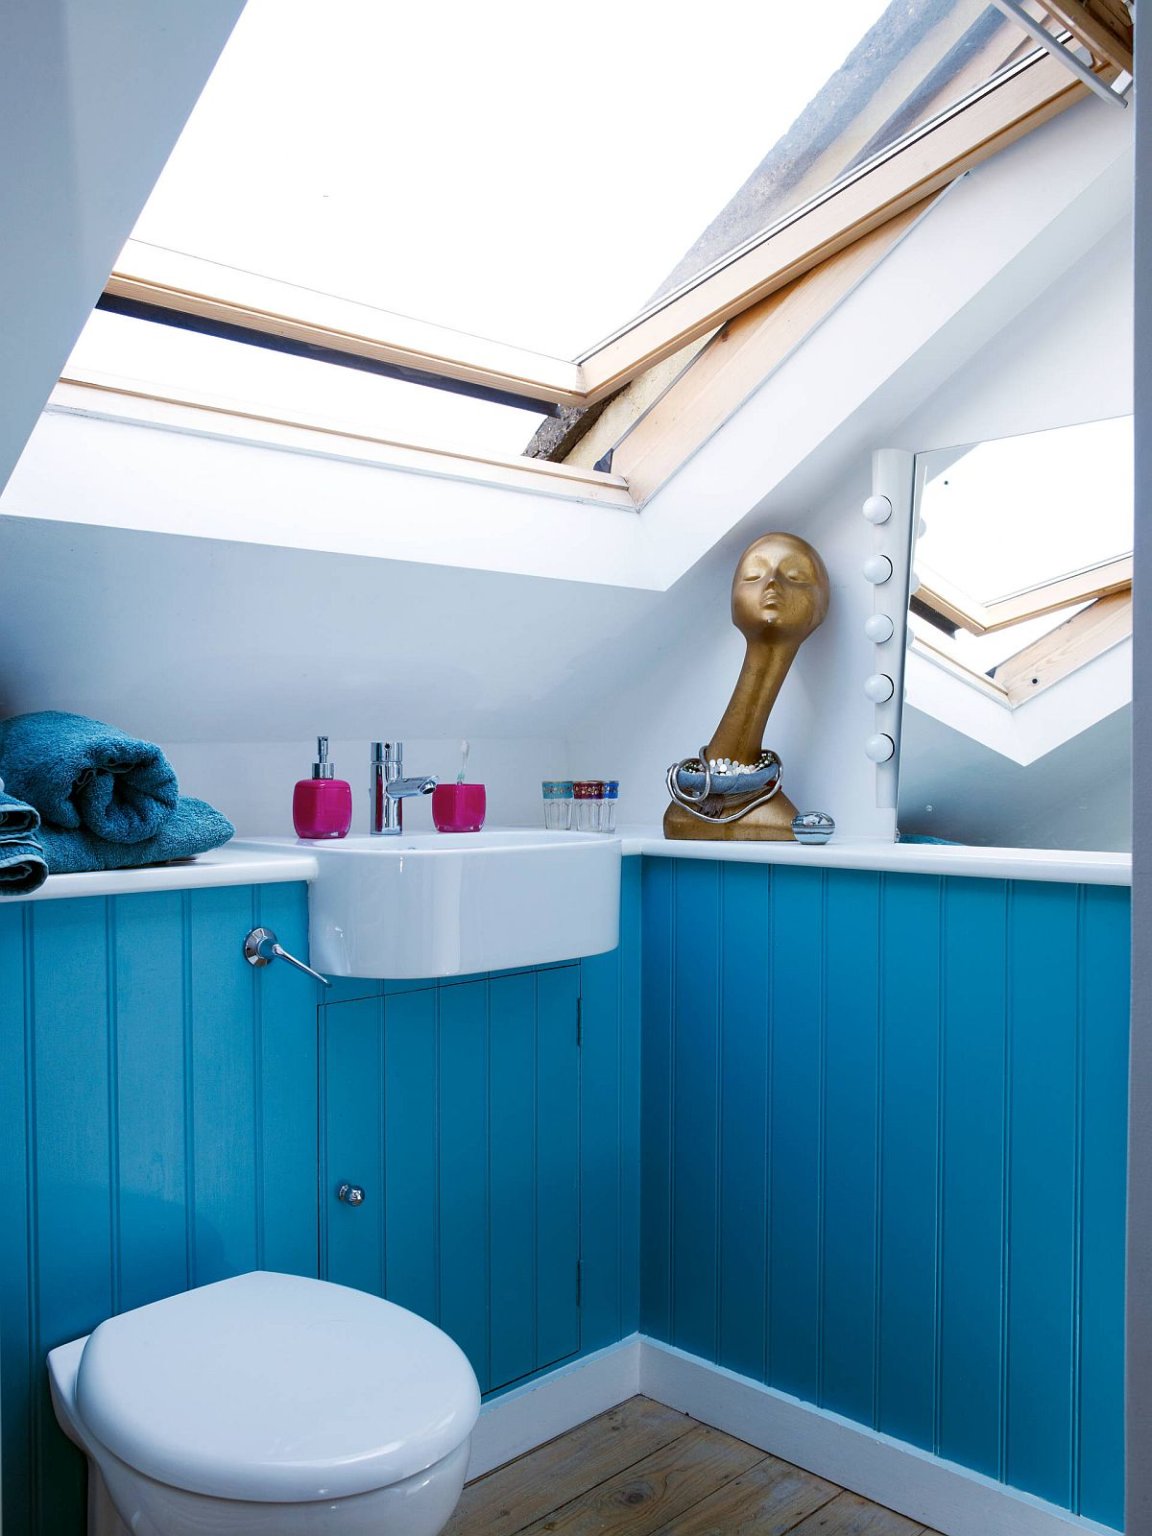 Hình ảnh phòng tắm gác mái với mảng tường sơn xanh da trời, cửa sổ mái